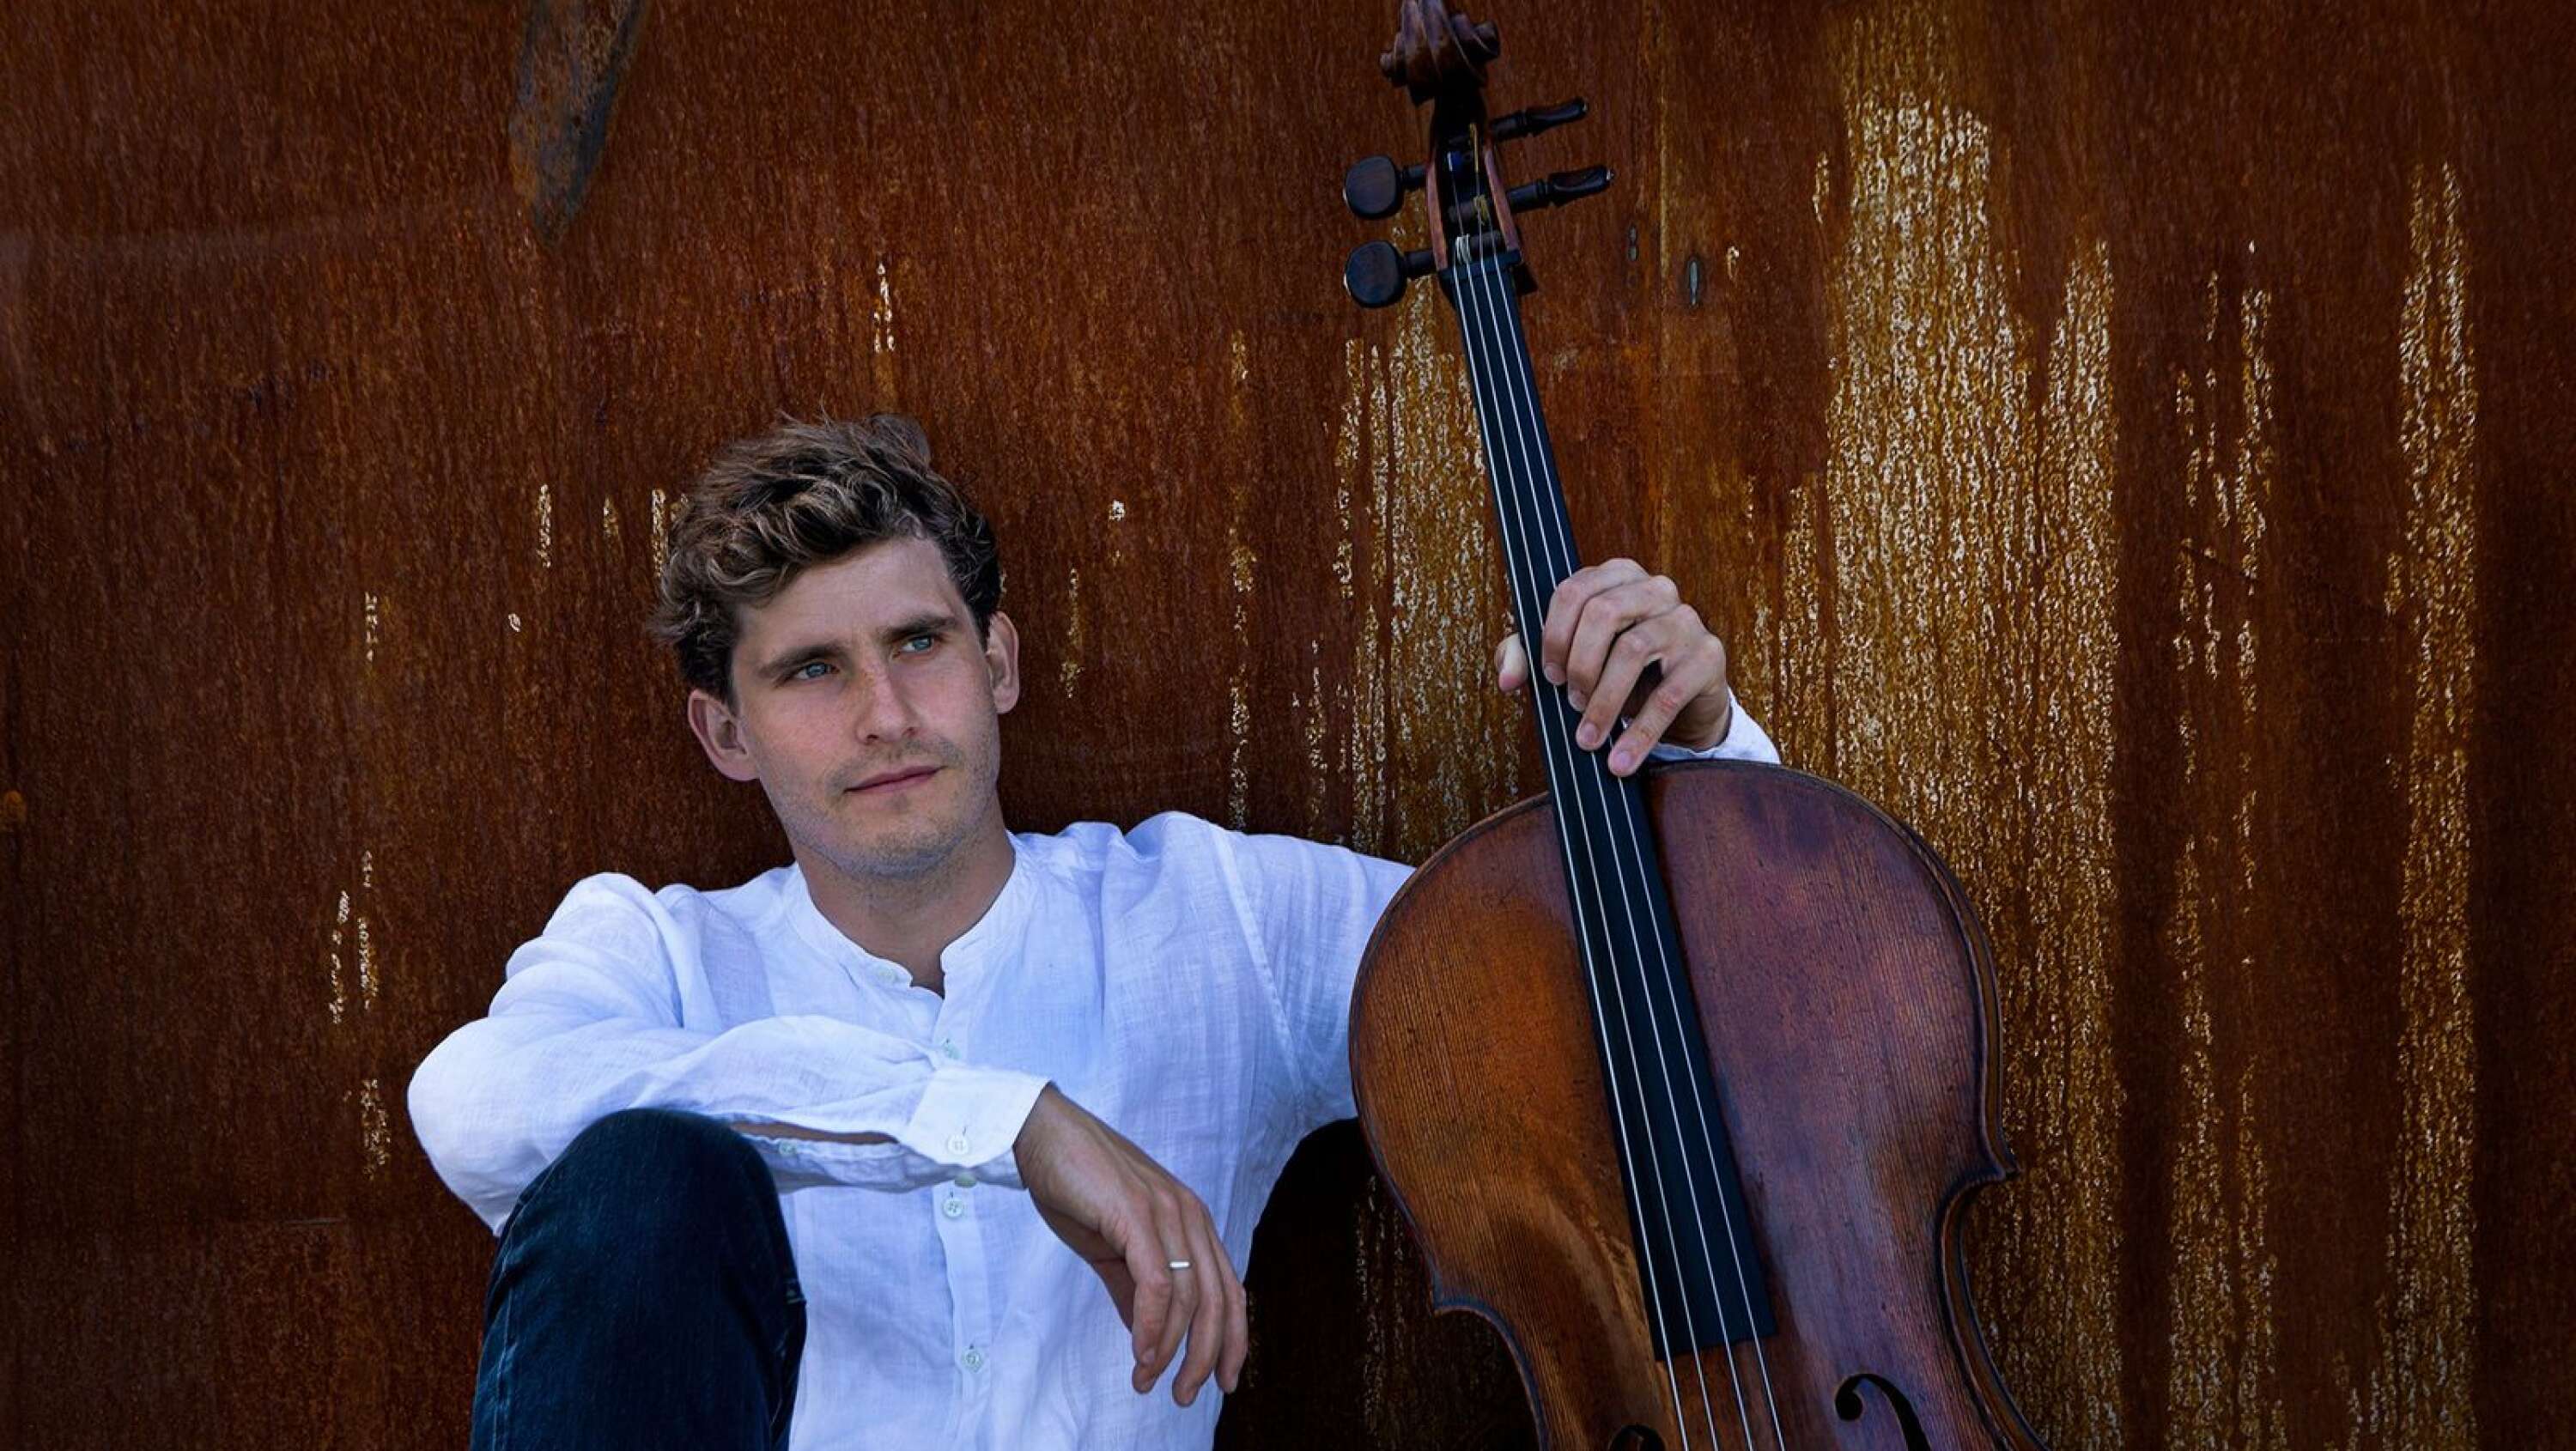 Dansk-svenske cellisten Andreas Brantelid är en av artisterna som uppträder under festivalen.